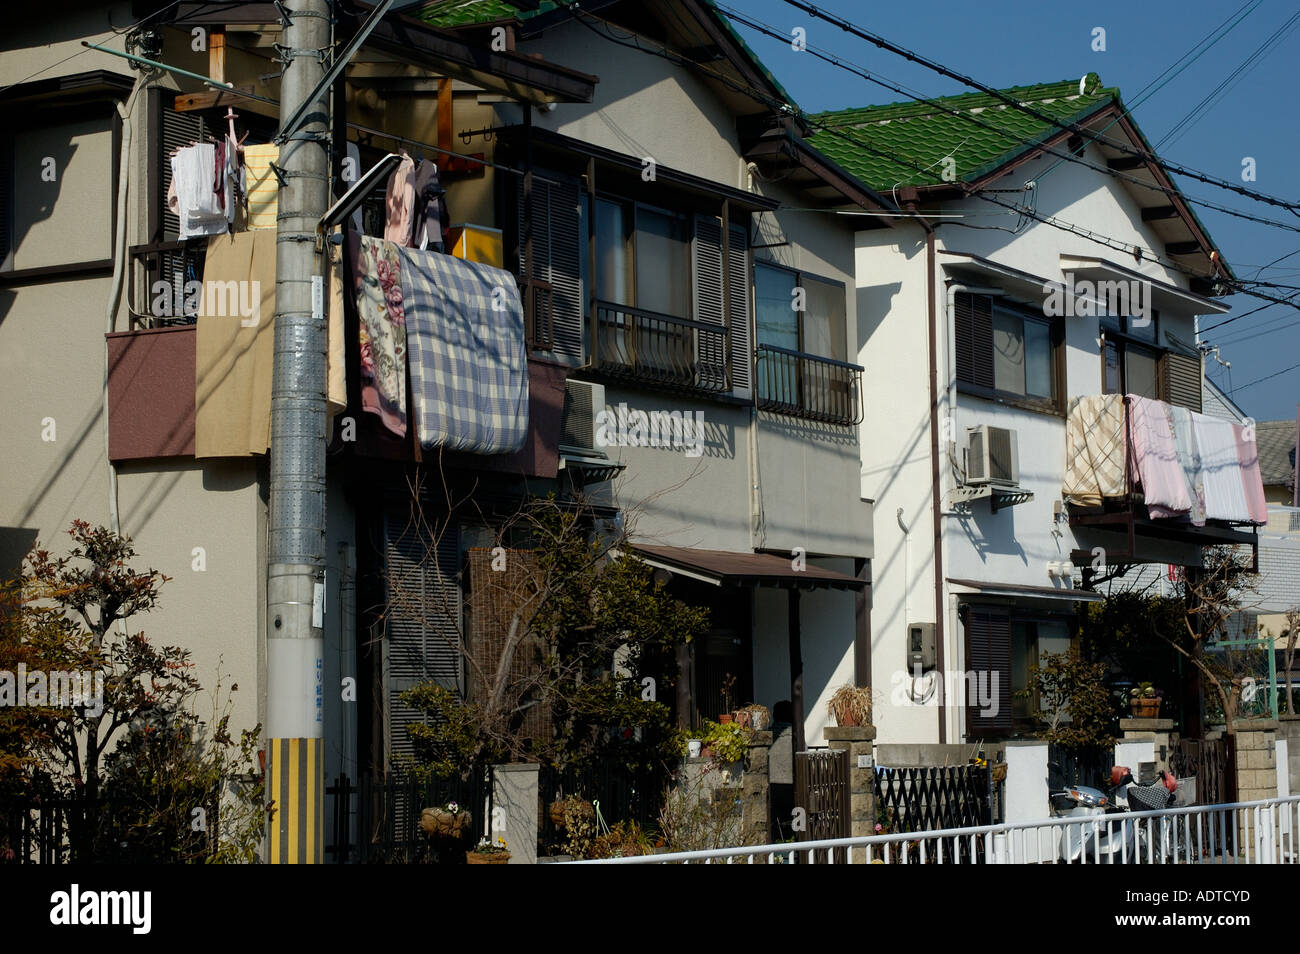 Casas japonesas fotografías e imágenes de alta resolución - Alamy